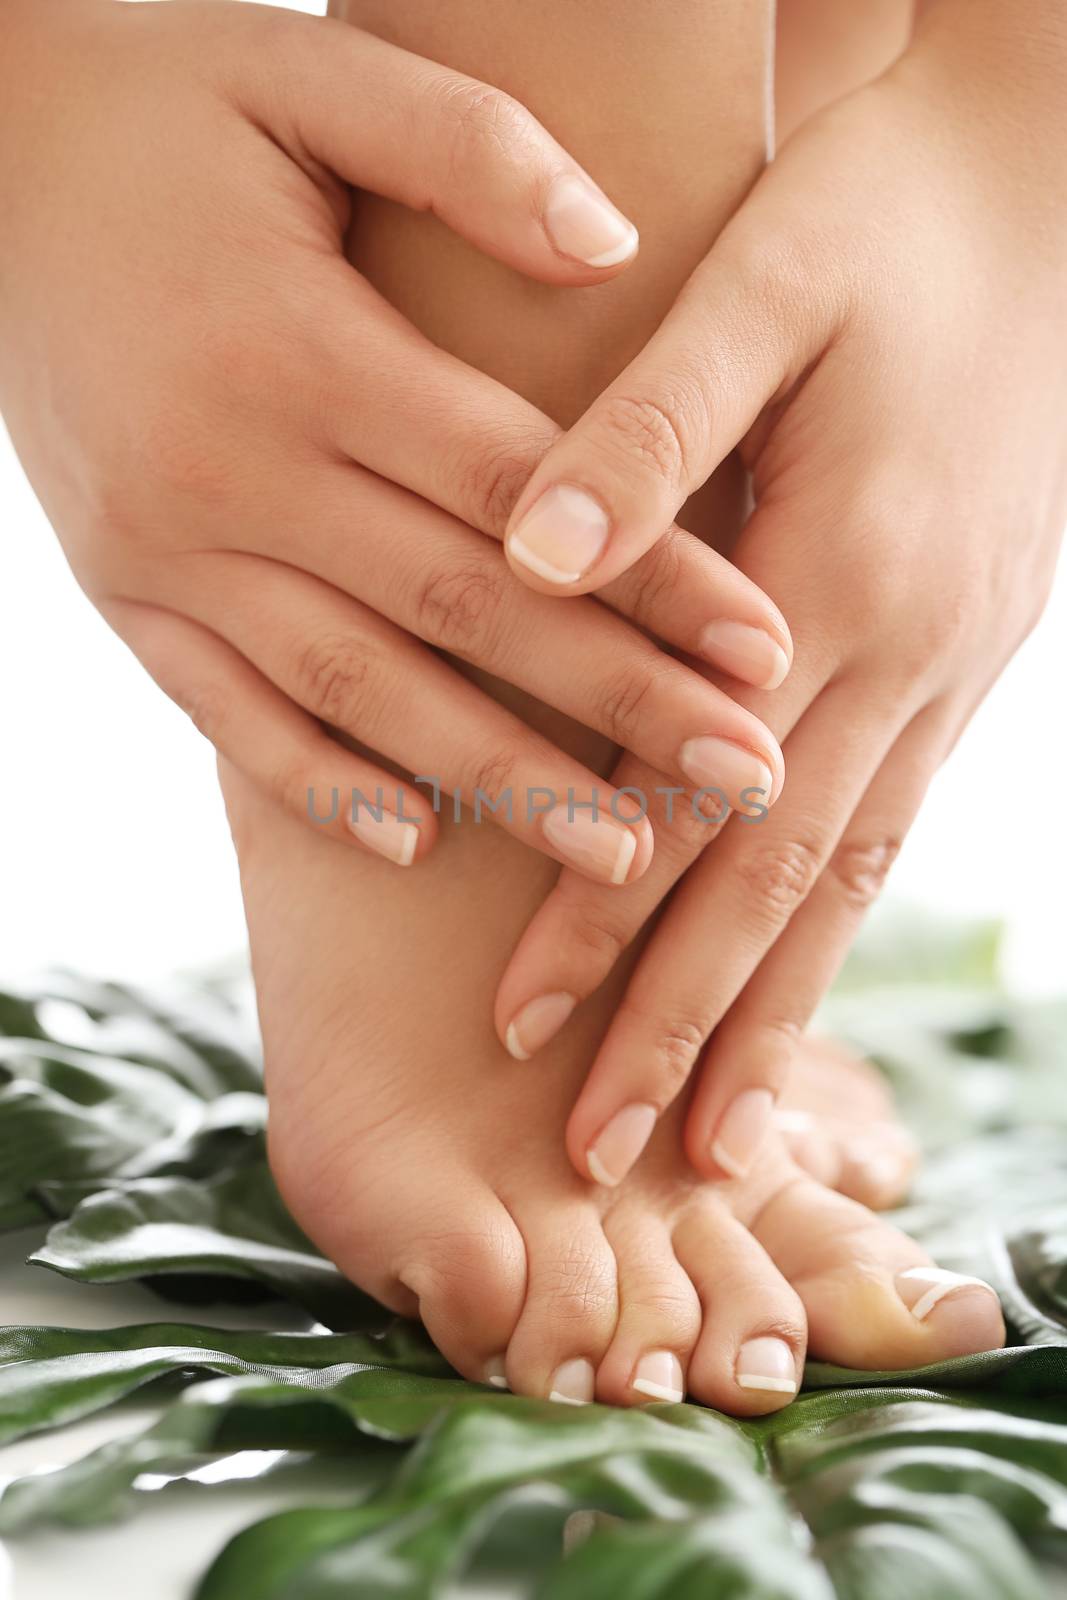 Skin care. Feet in close-up